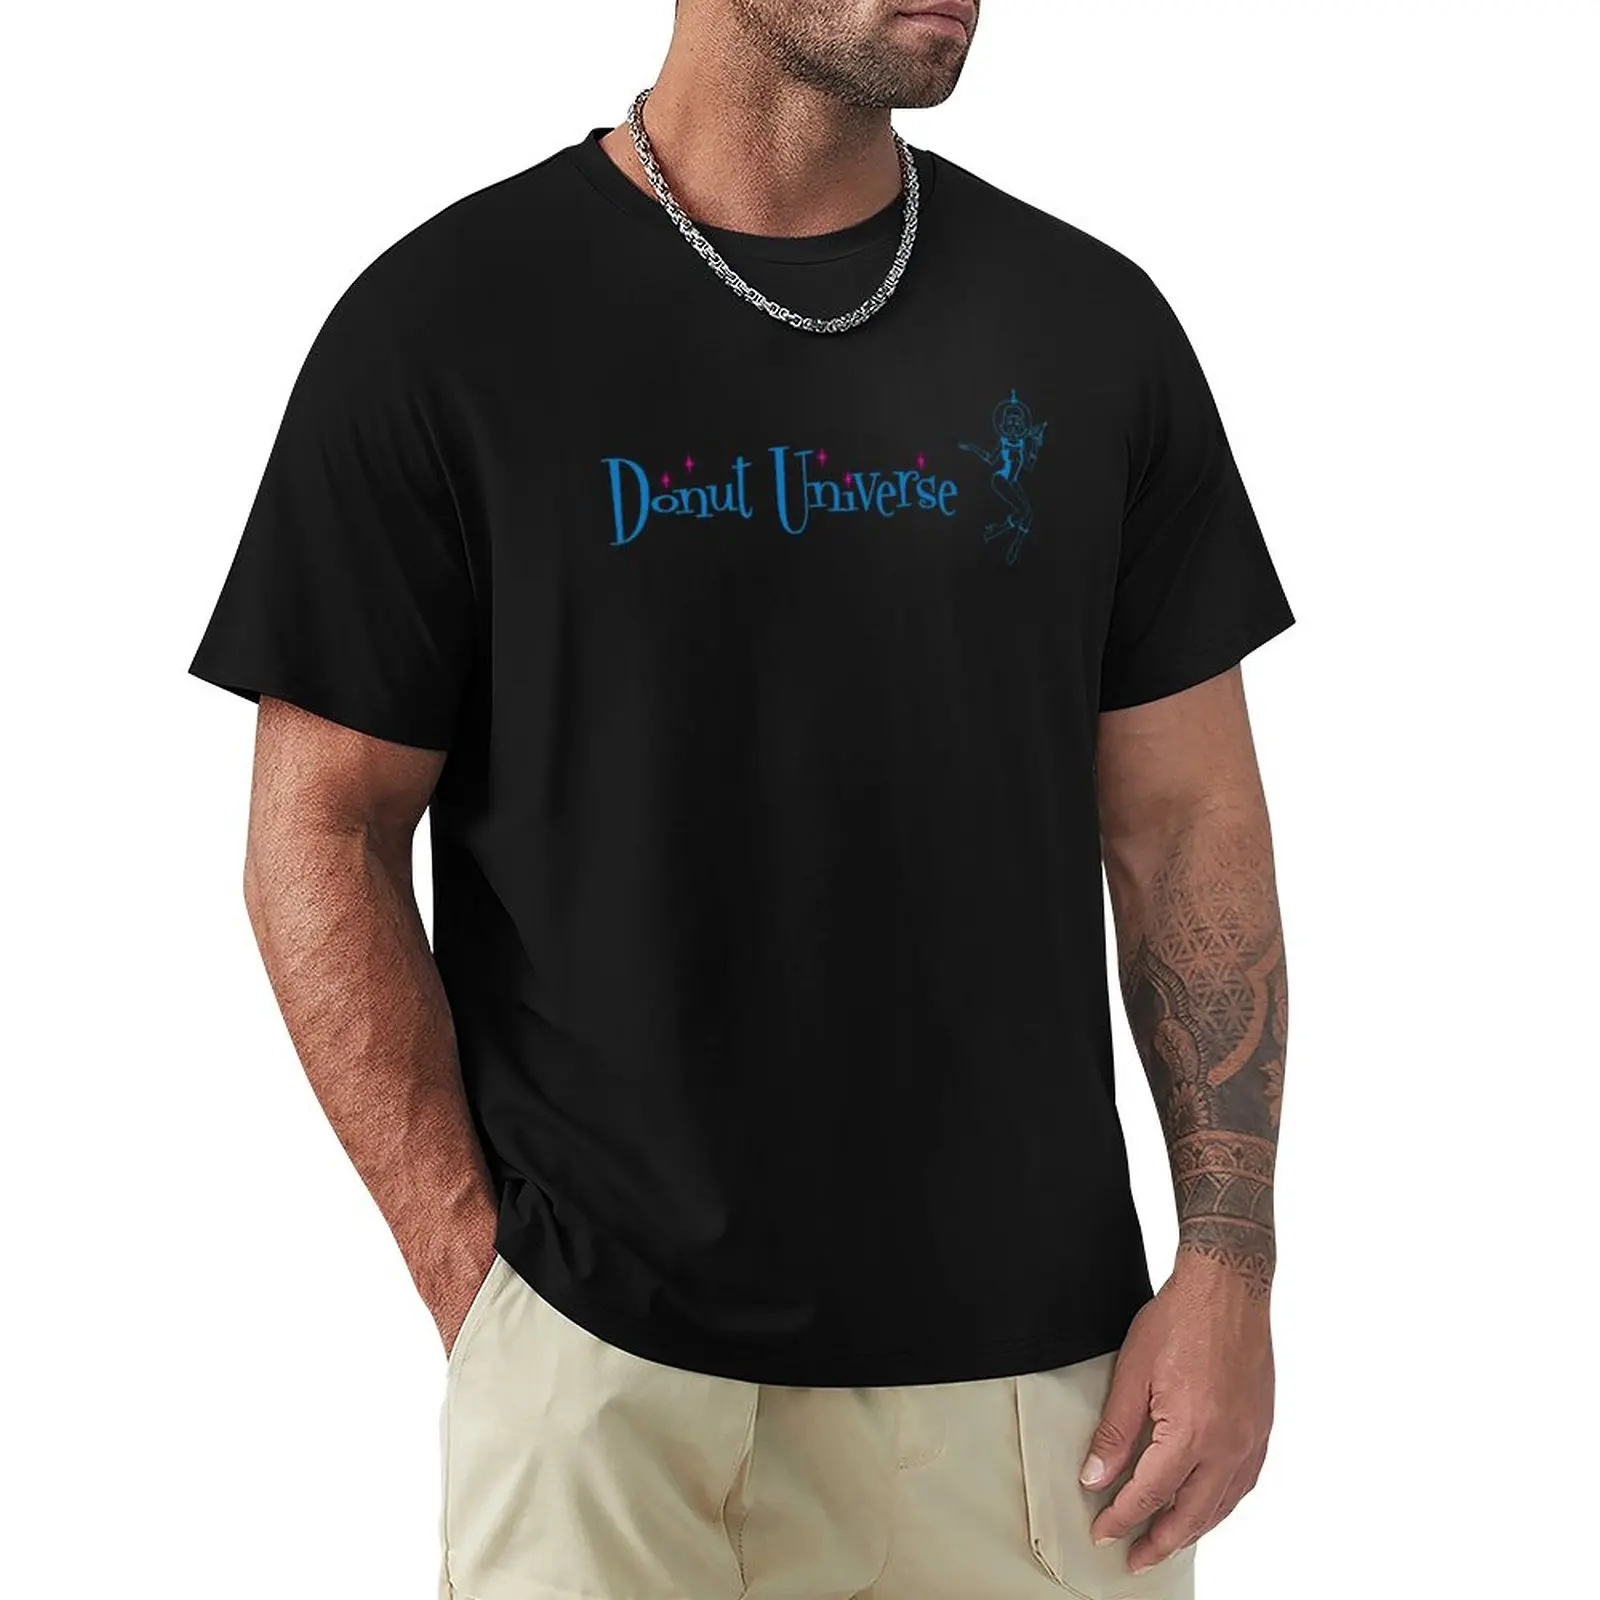 Вселенная пончиков - Горизонтальный логотип - Одежда, футболки, спортивные рубашки, забавные футболки, футболки для тяжеловесов, простые черные футболки для мужчин Изображение 0